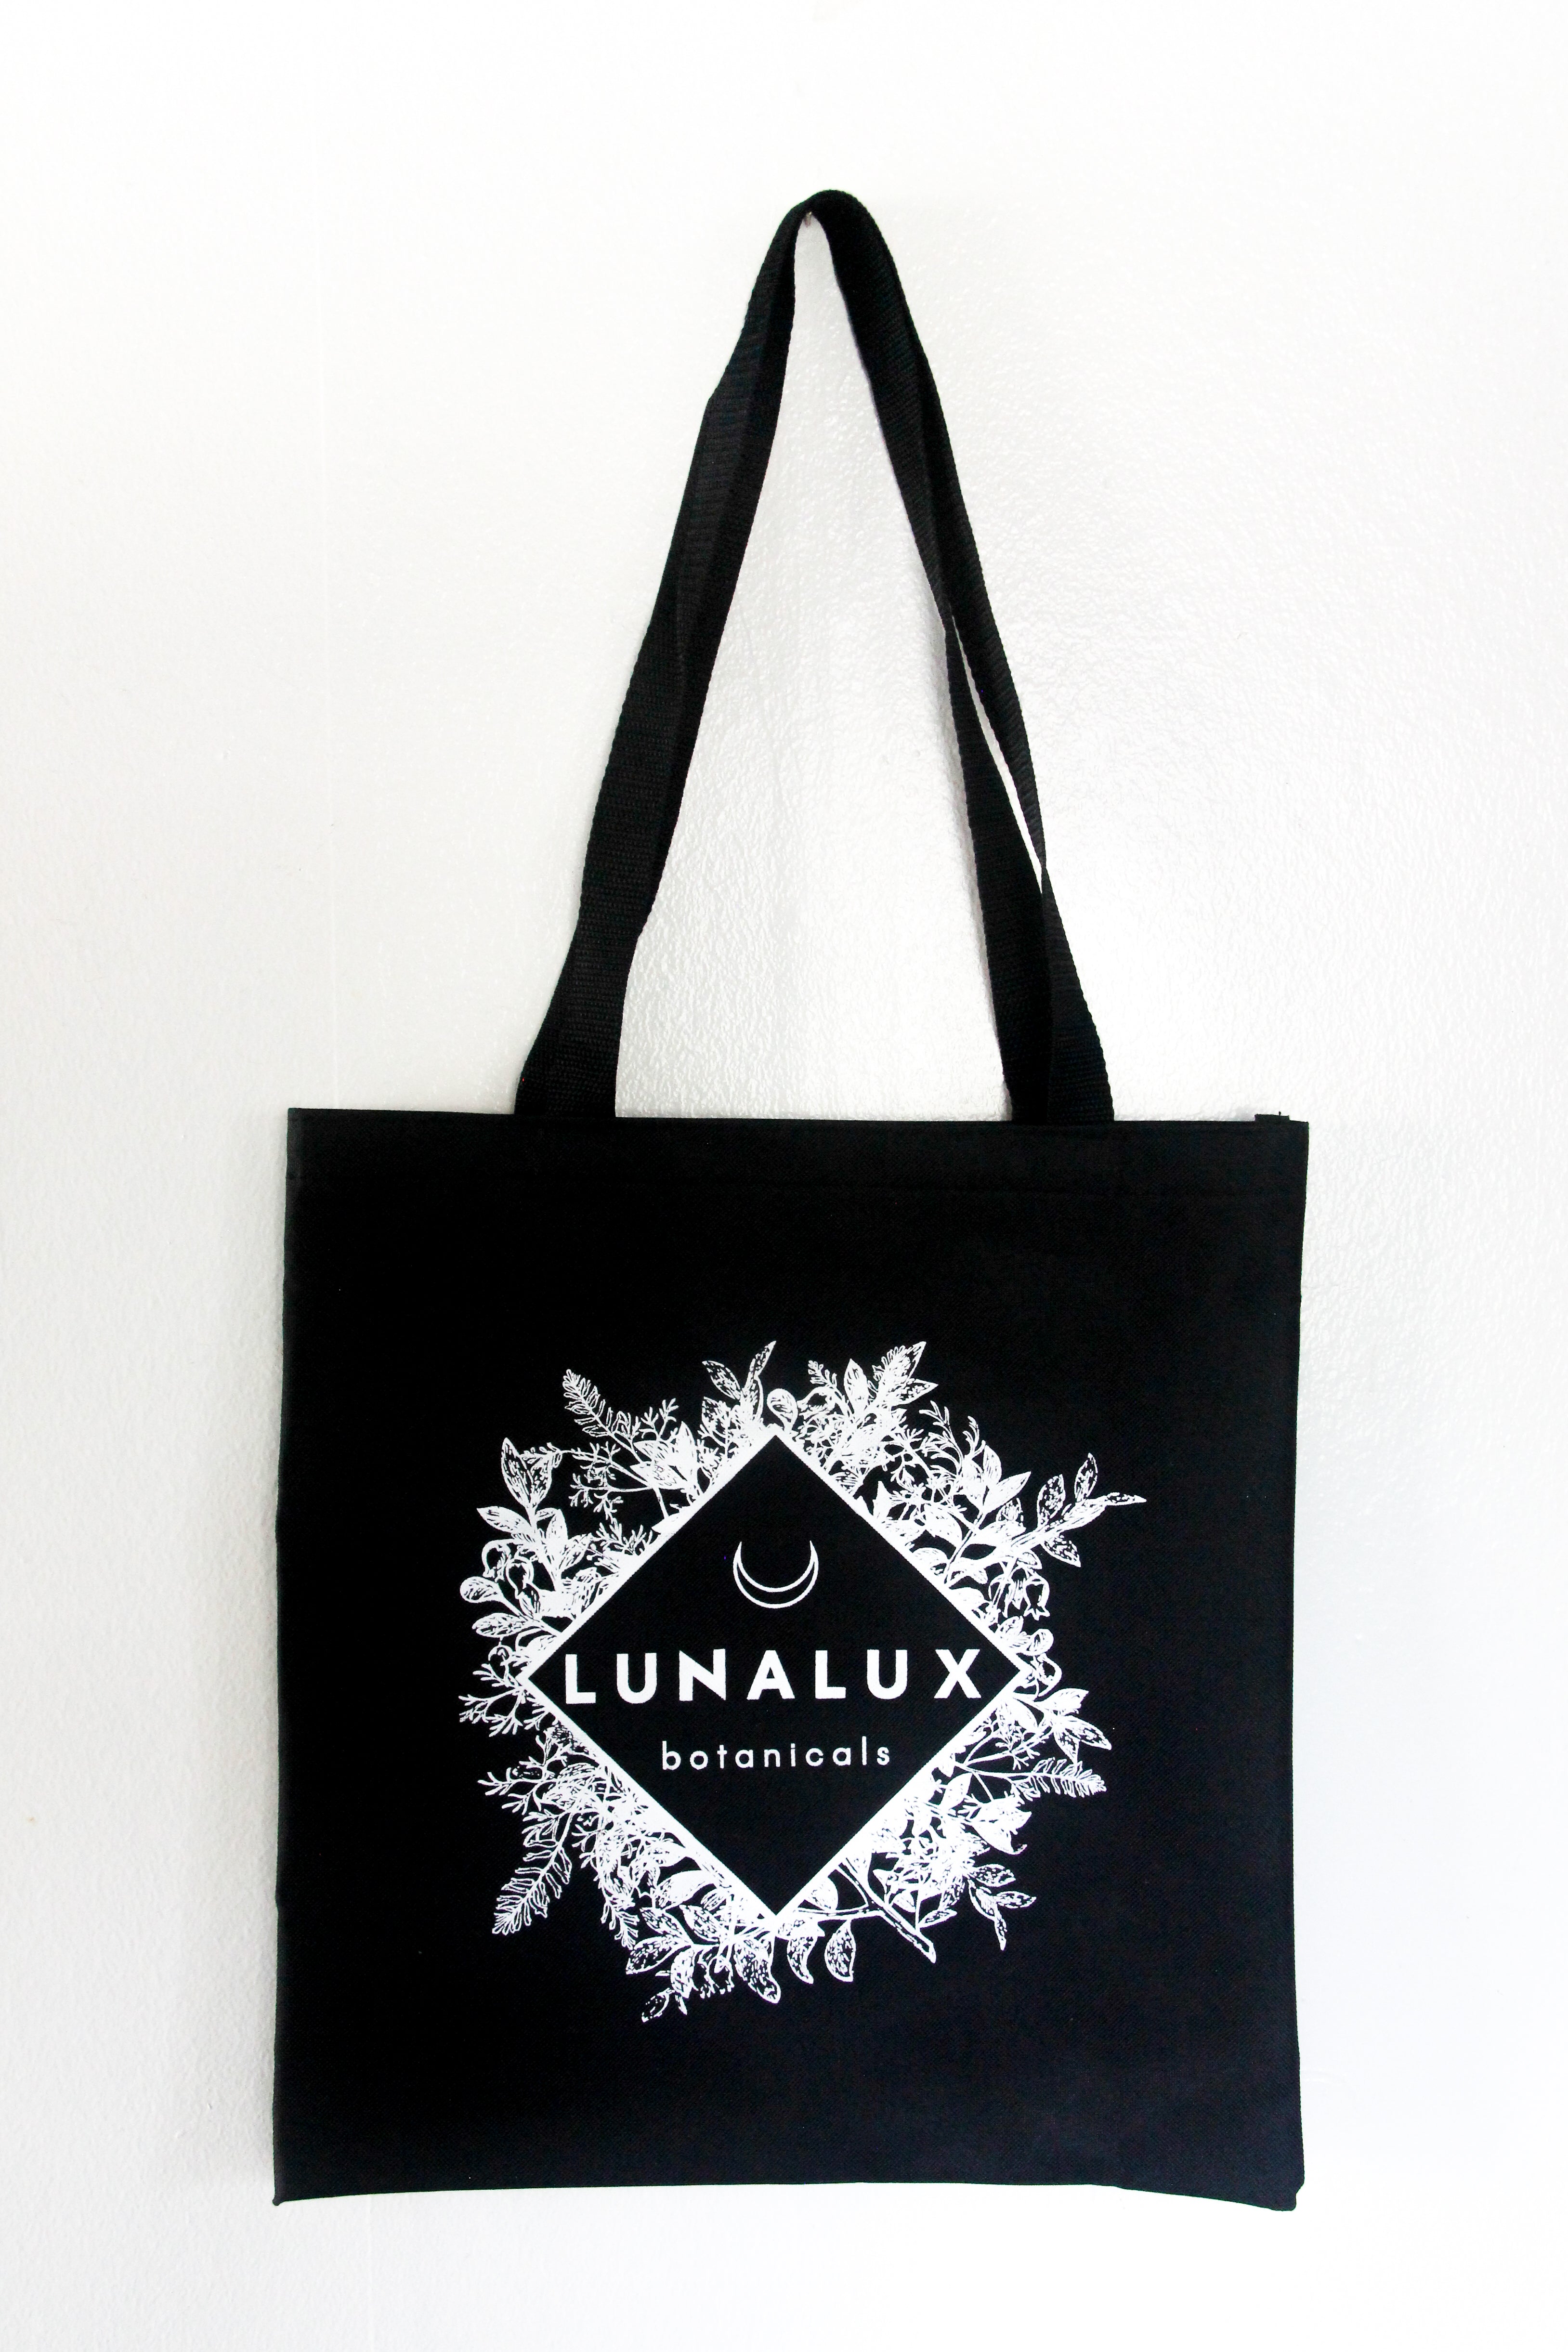 Lunalux Botanicals Bag